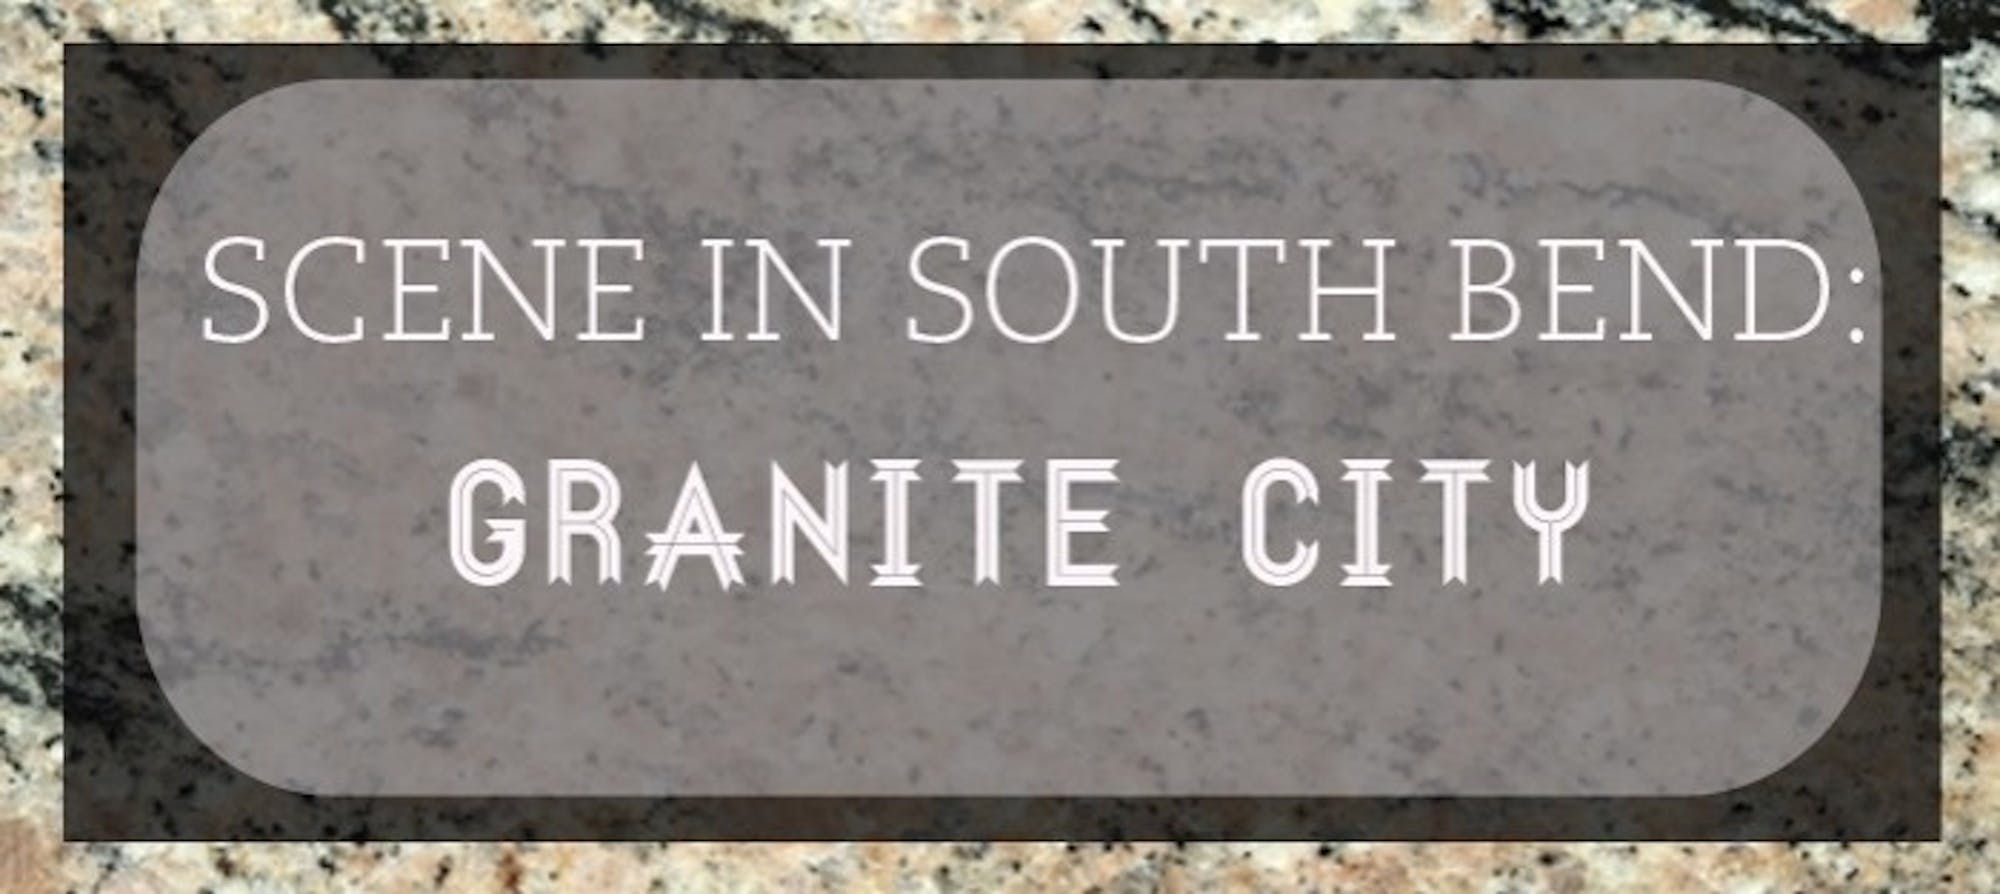 sisb-granite-city-web-